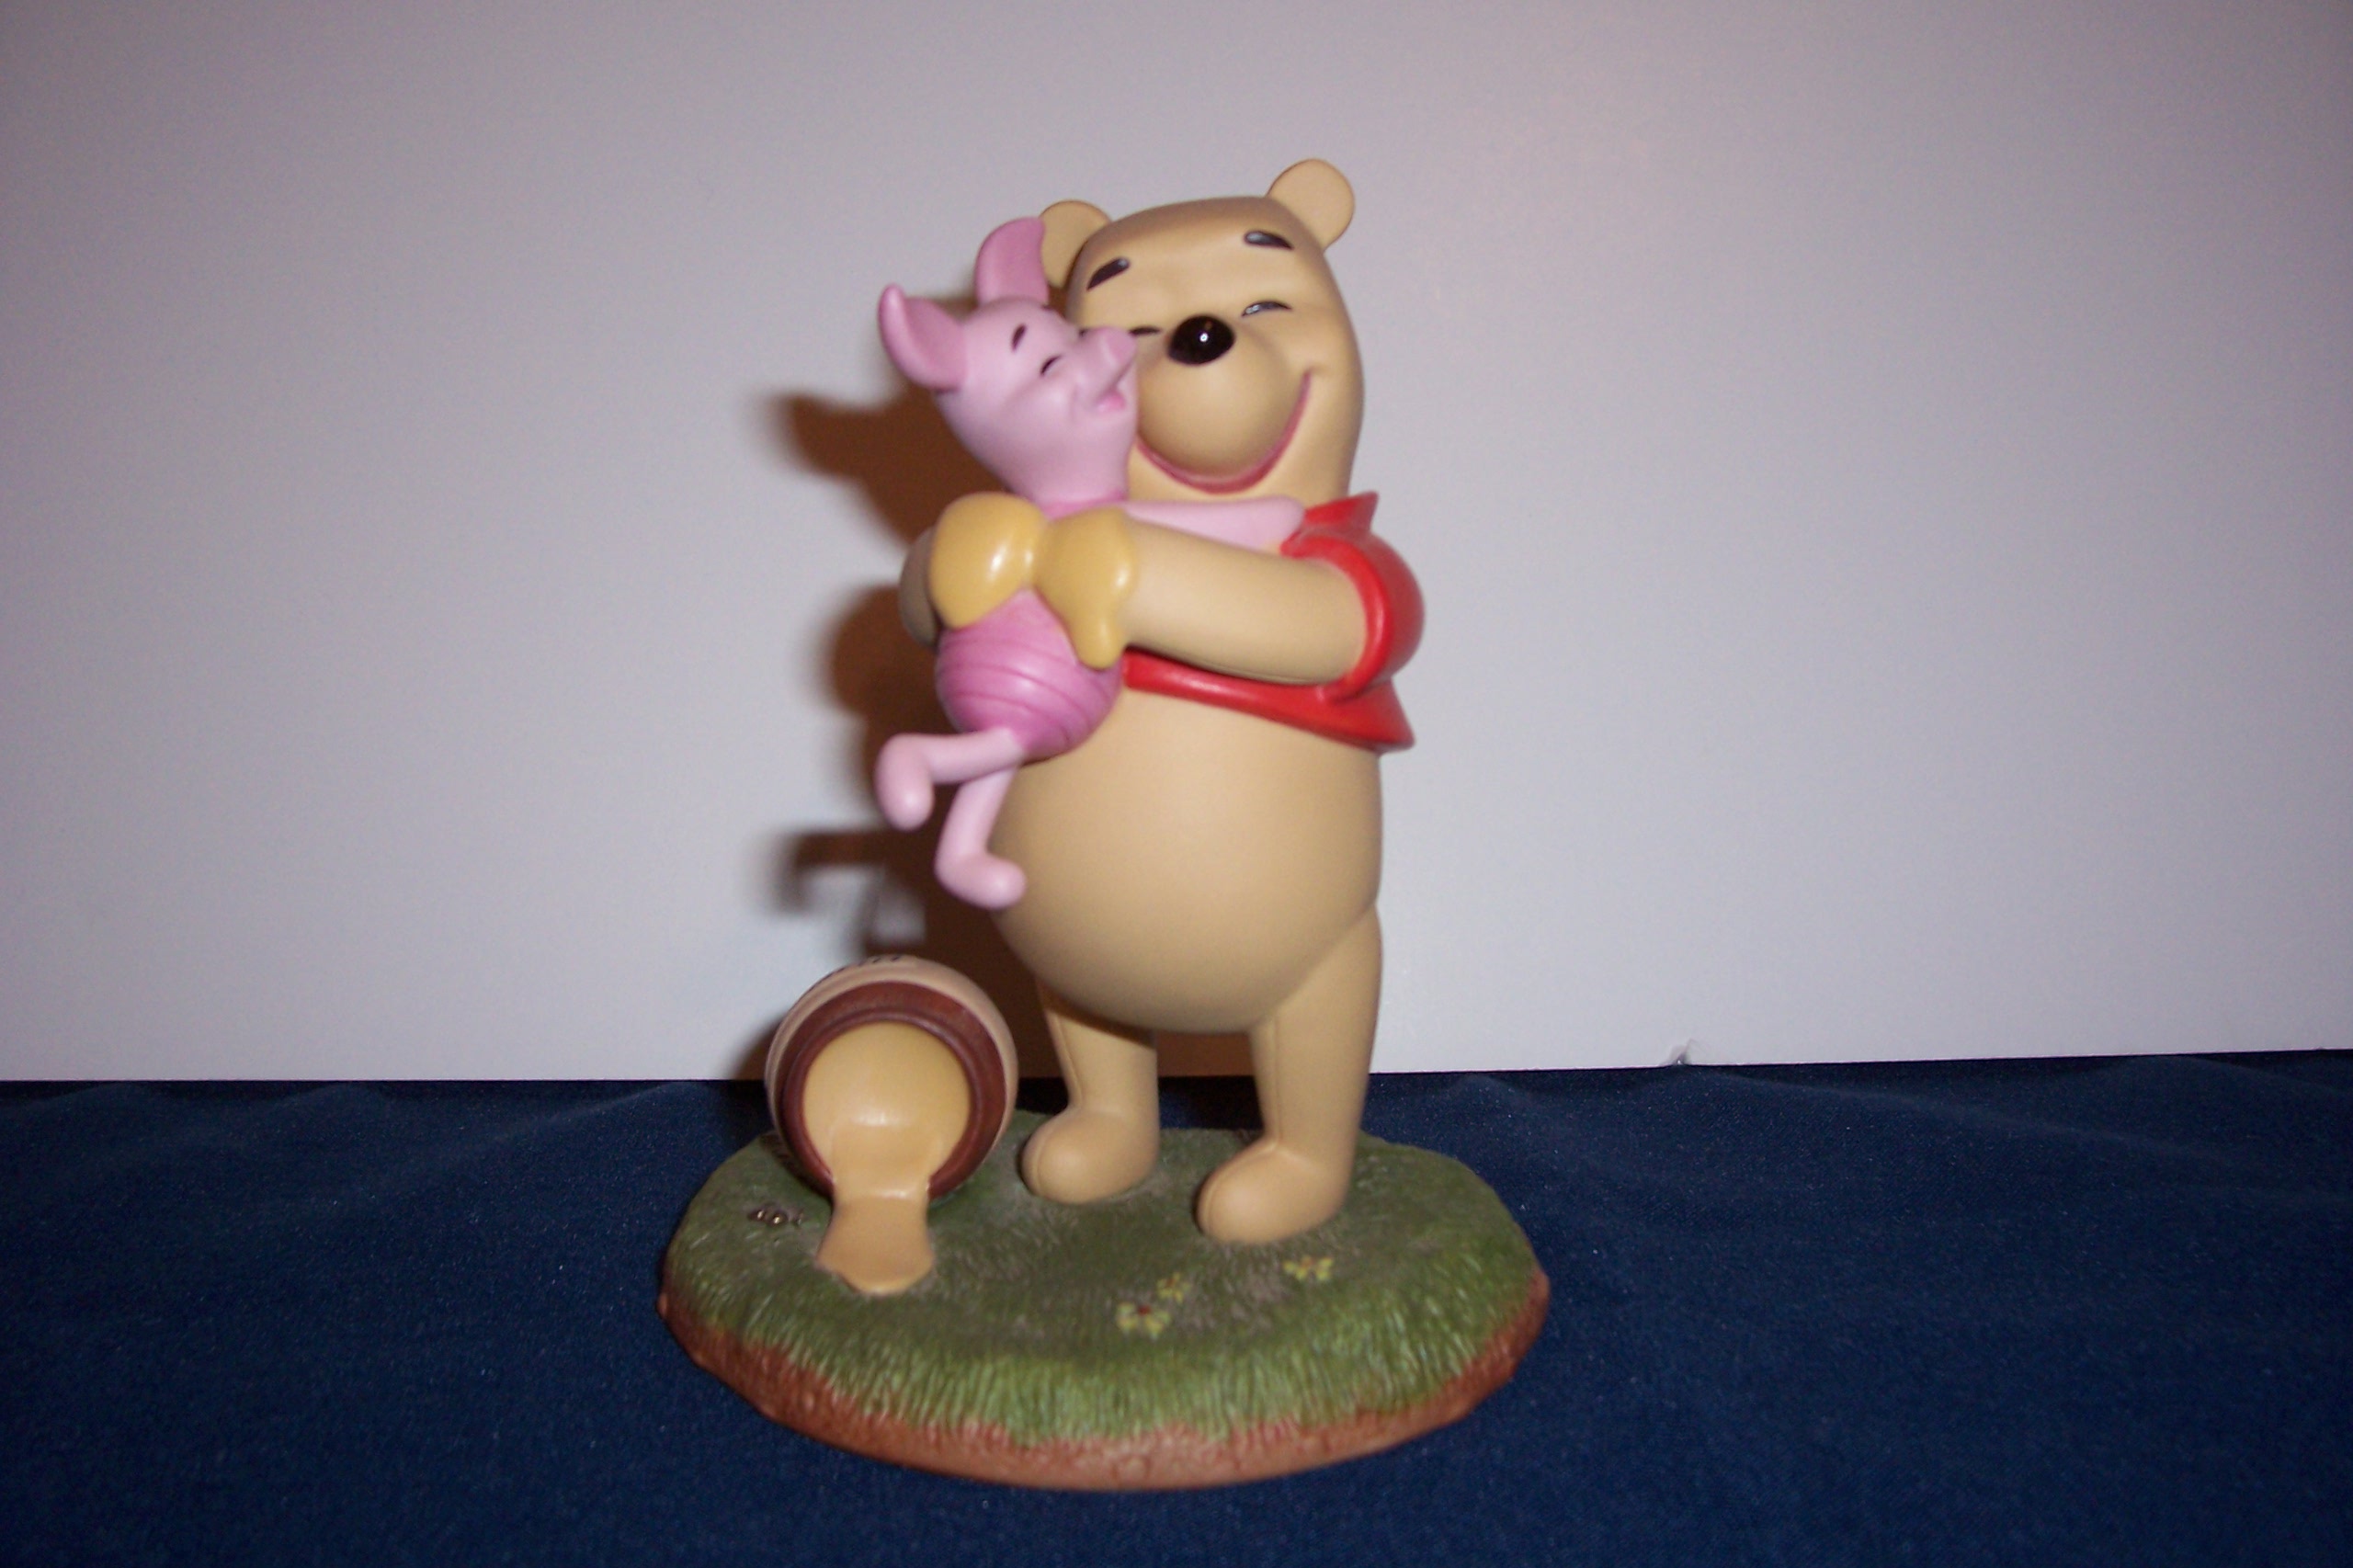 Winnie the Pooh- A Good Friend Sticks to You Like Honey